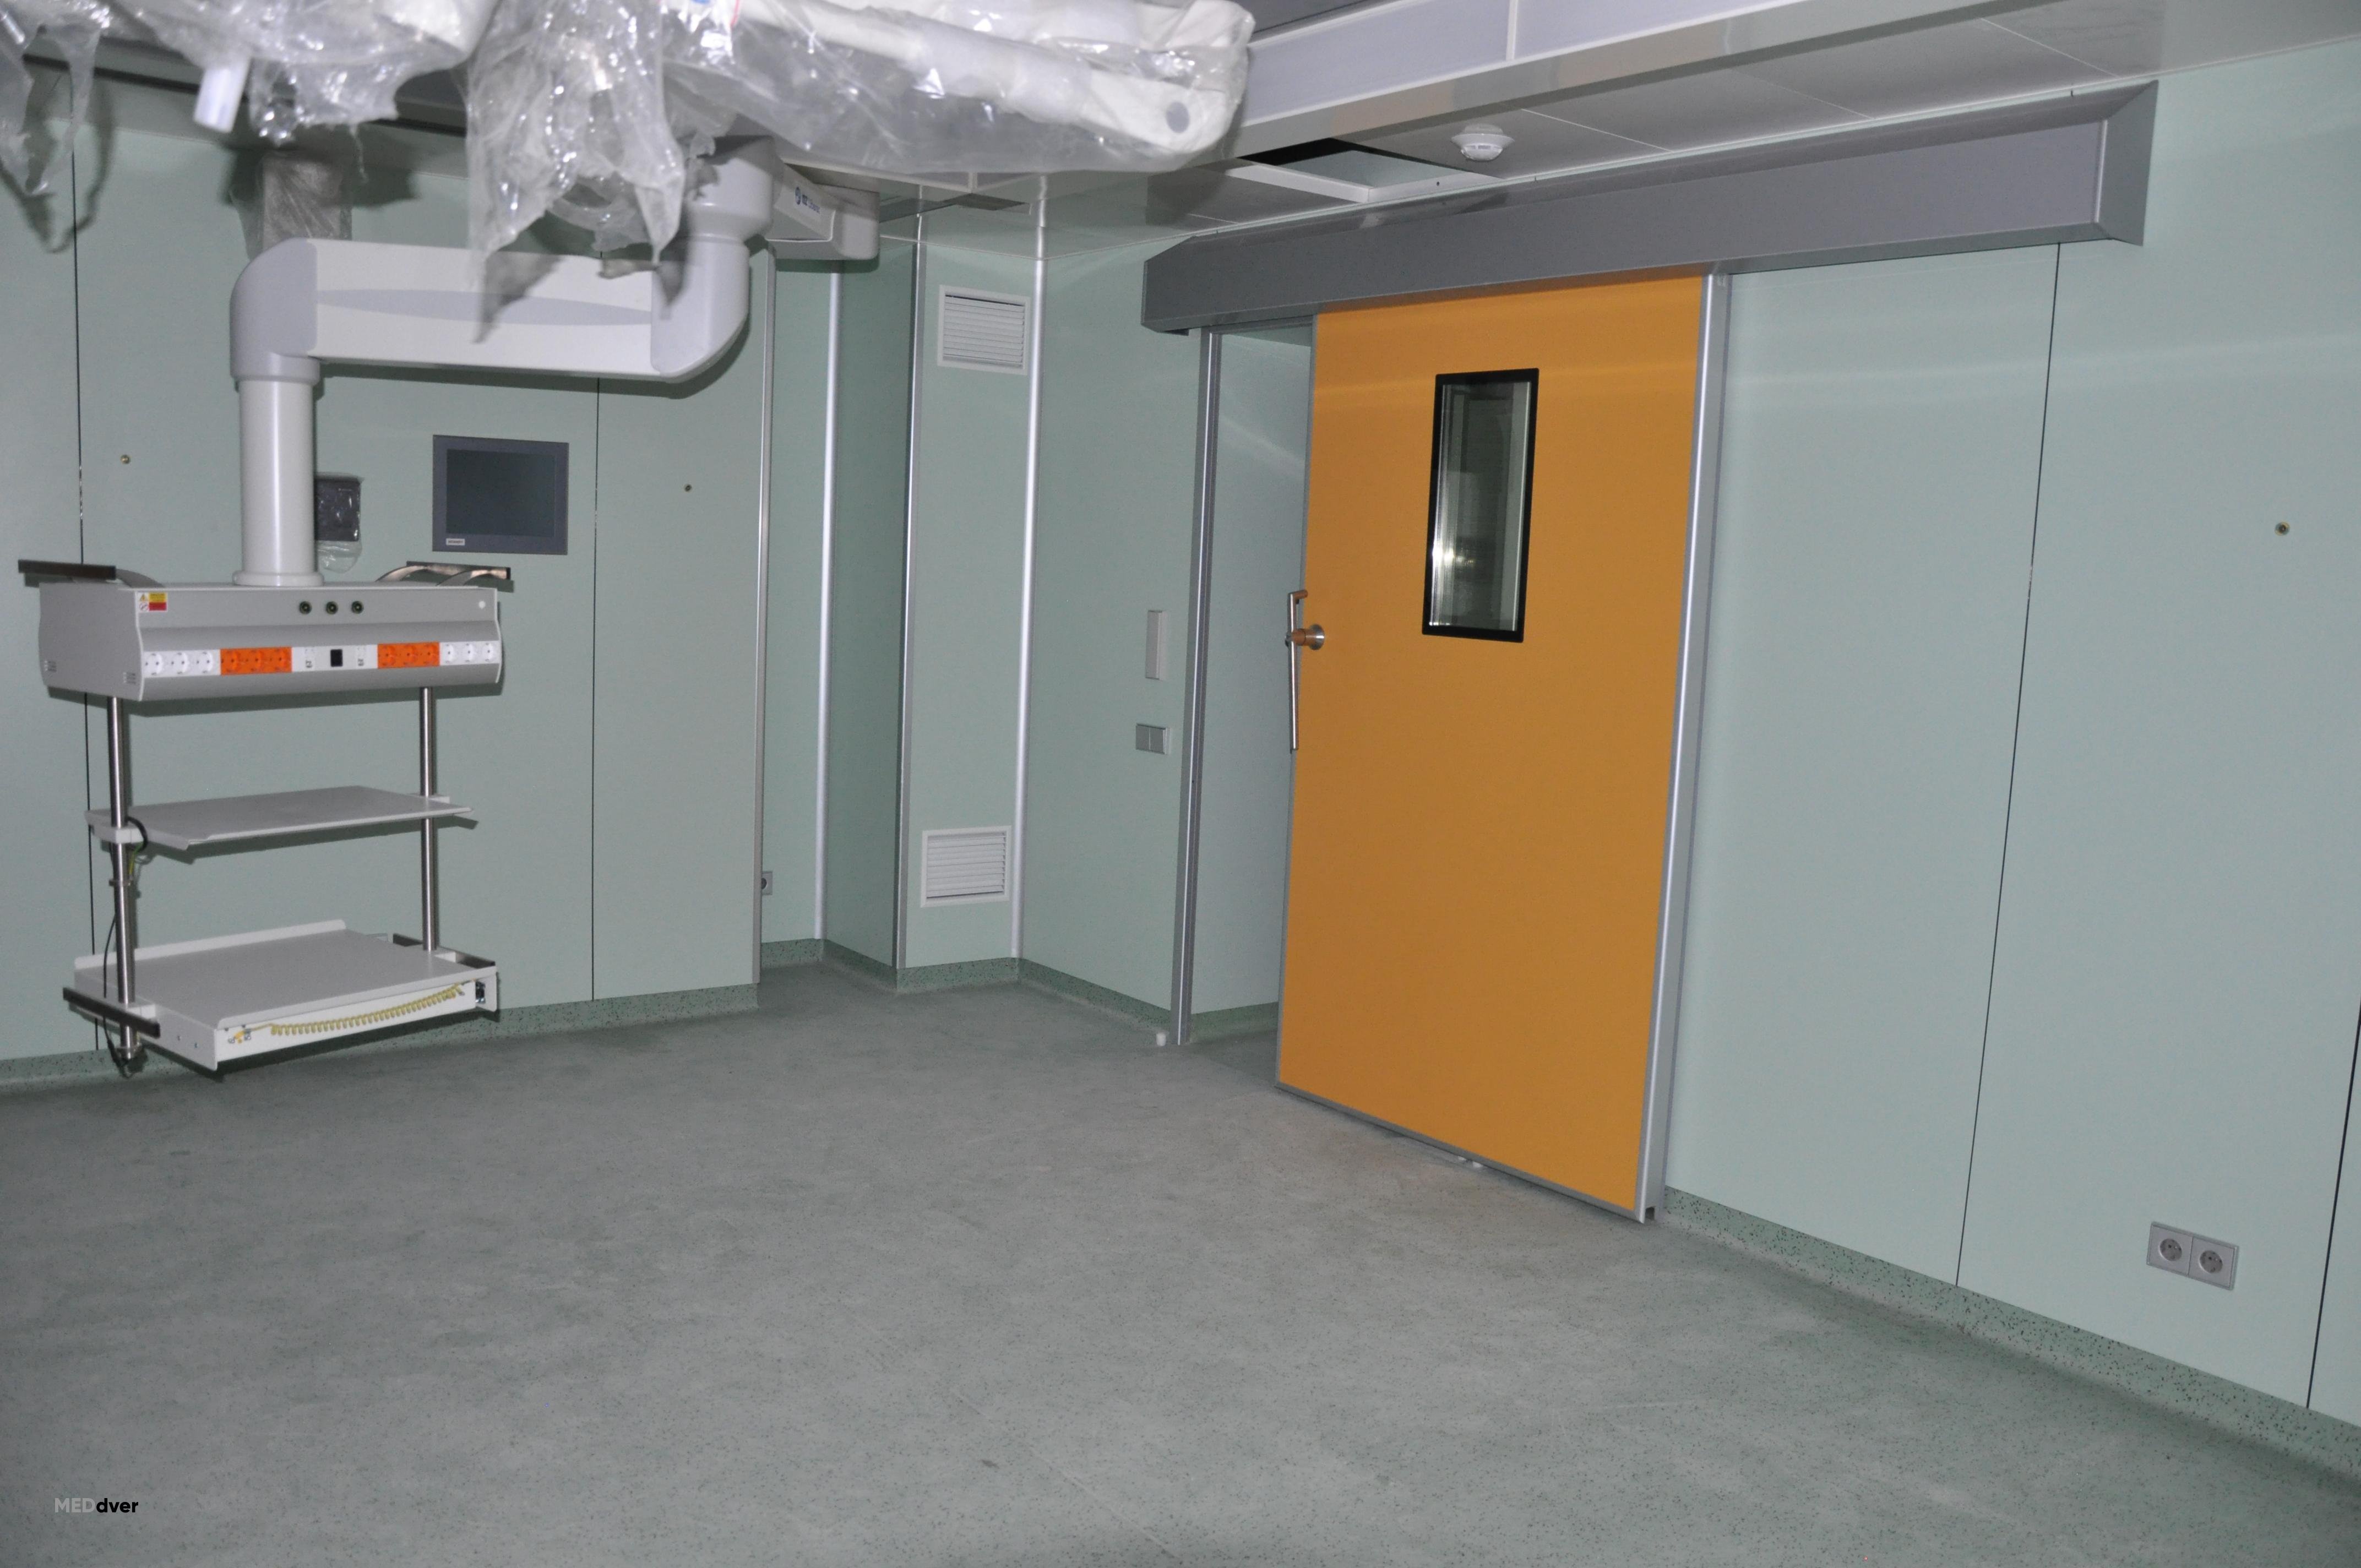 Двери медицинские екатеринбург. Откатные рентгенозащитные двери. Операционные двери откатные автоматические рентгенозащитные. Герметичные двери 2 группы патогенности для чистых помещений. Герметичные двери чистые комнаты.